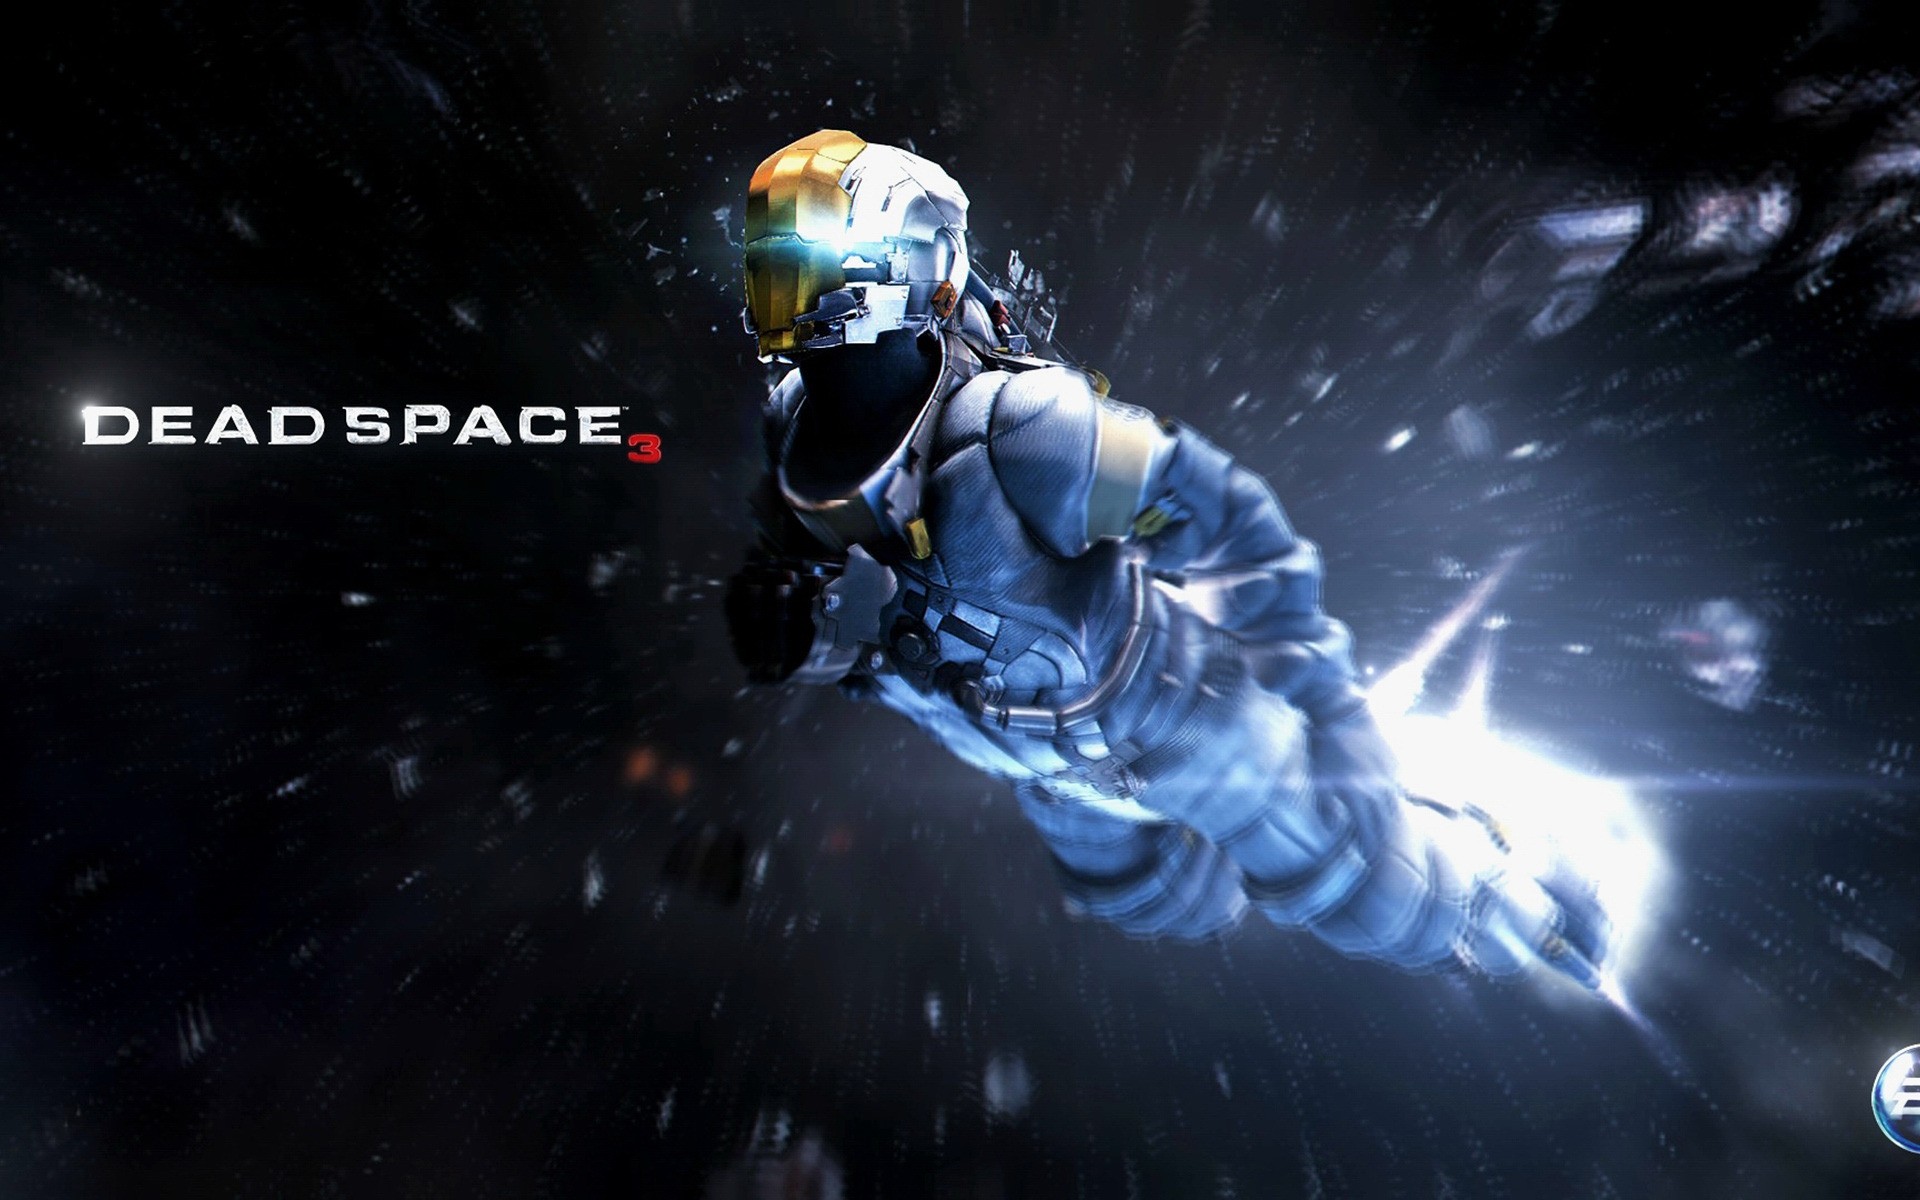 Обои игры космос Alien Rage картинки на рабочий стол на тему Космос - скачать бесплатно